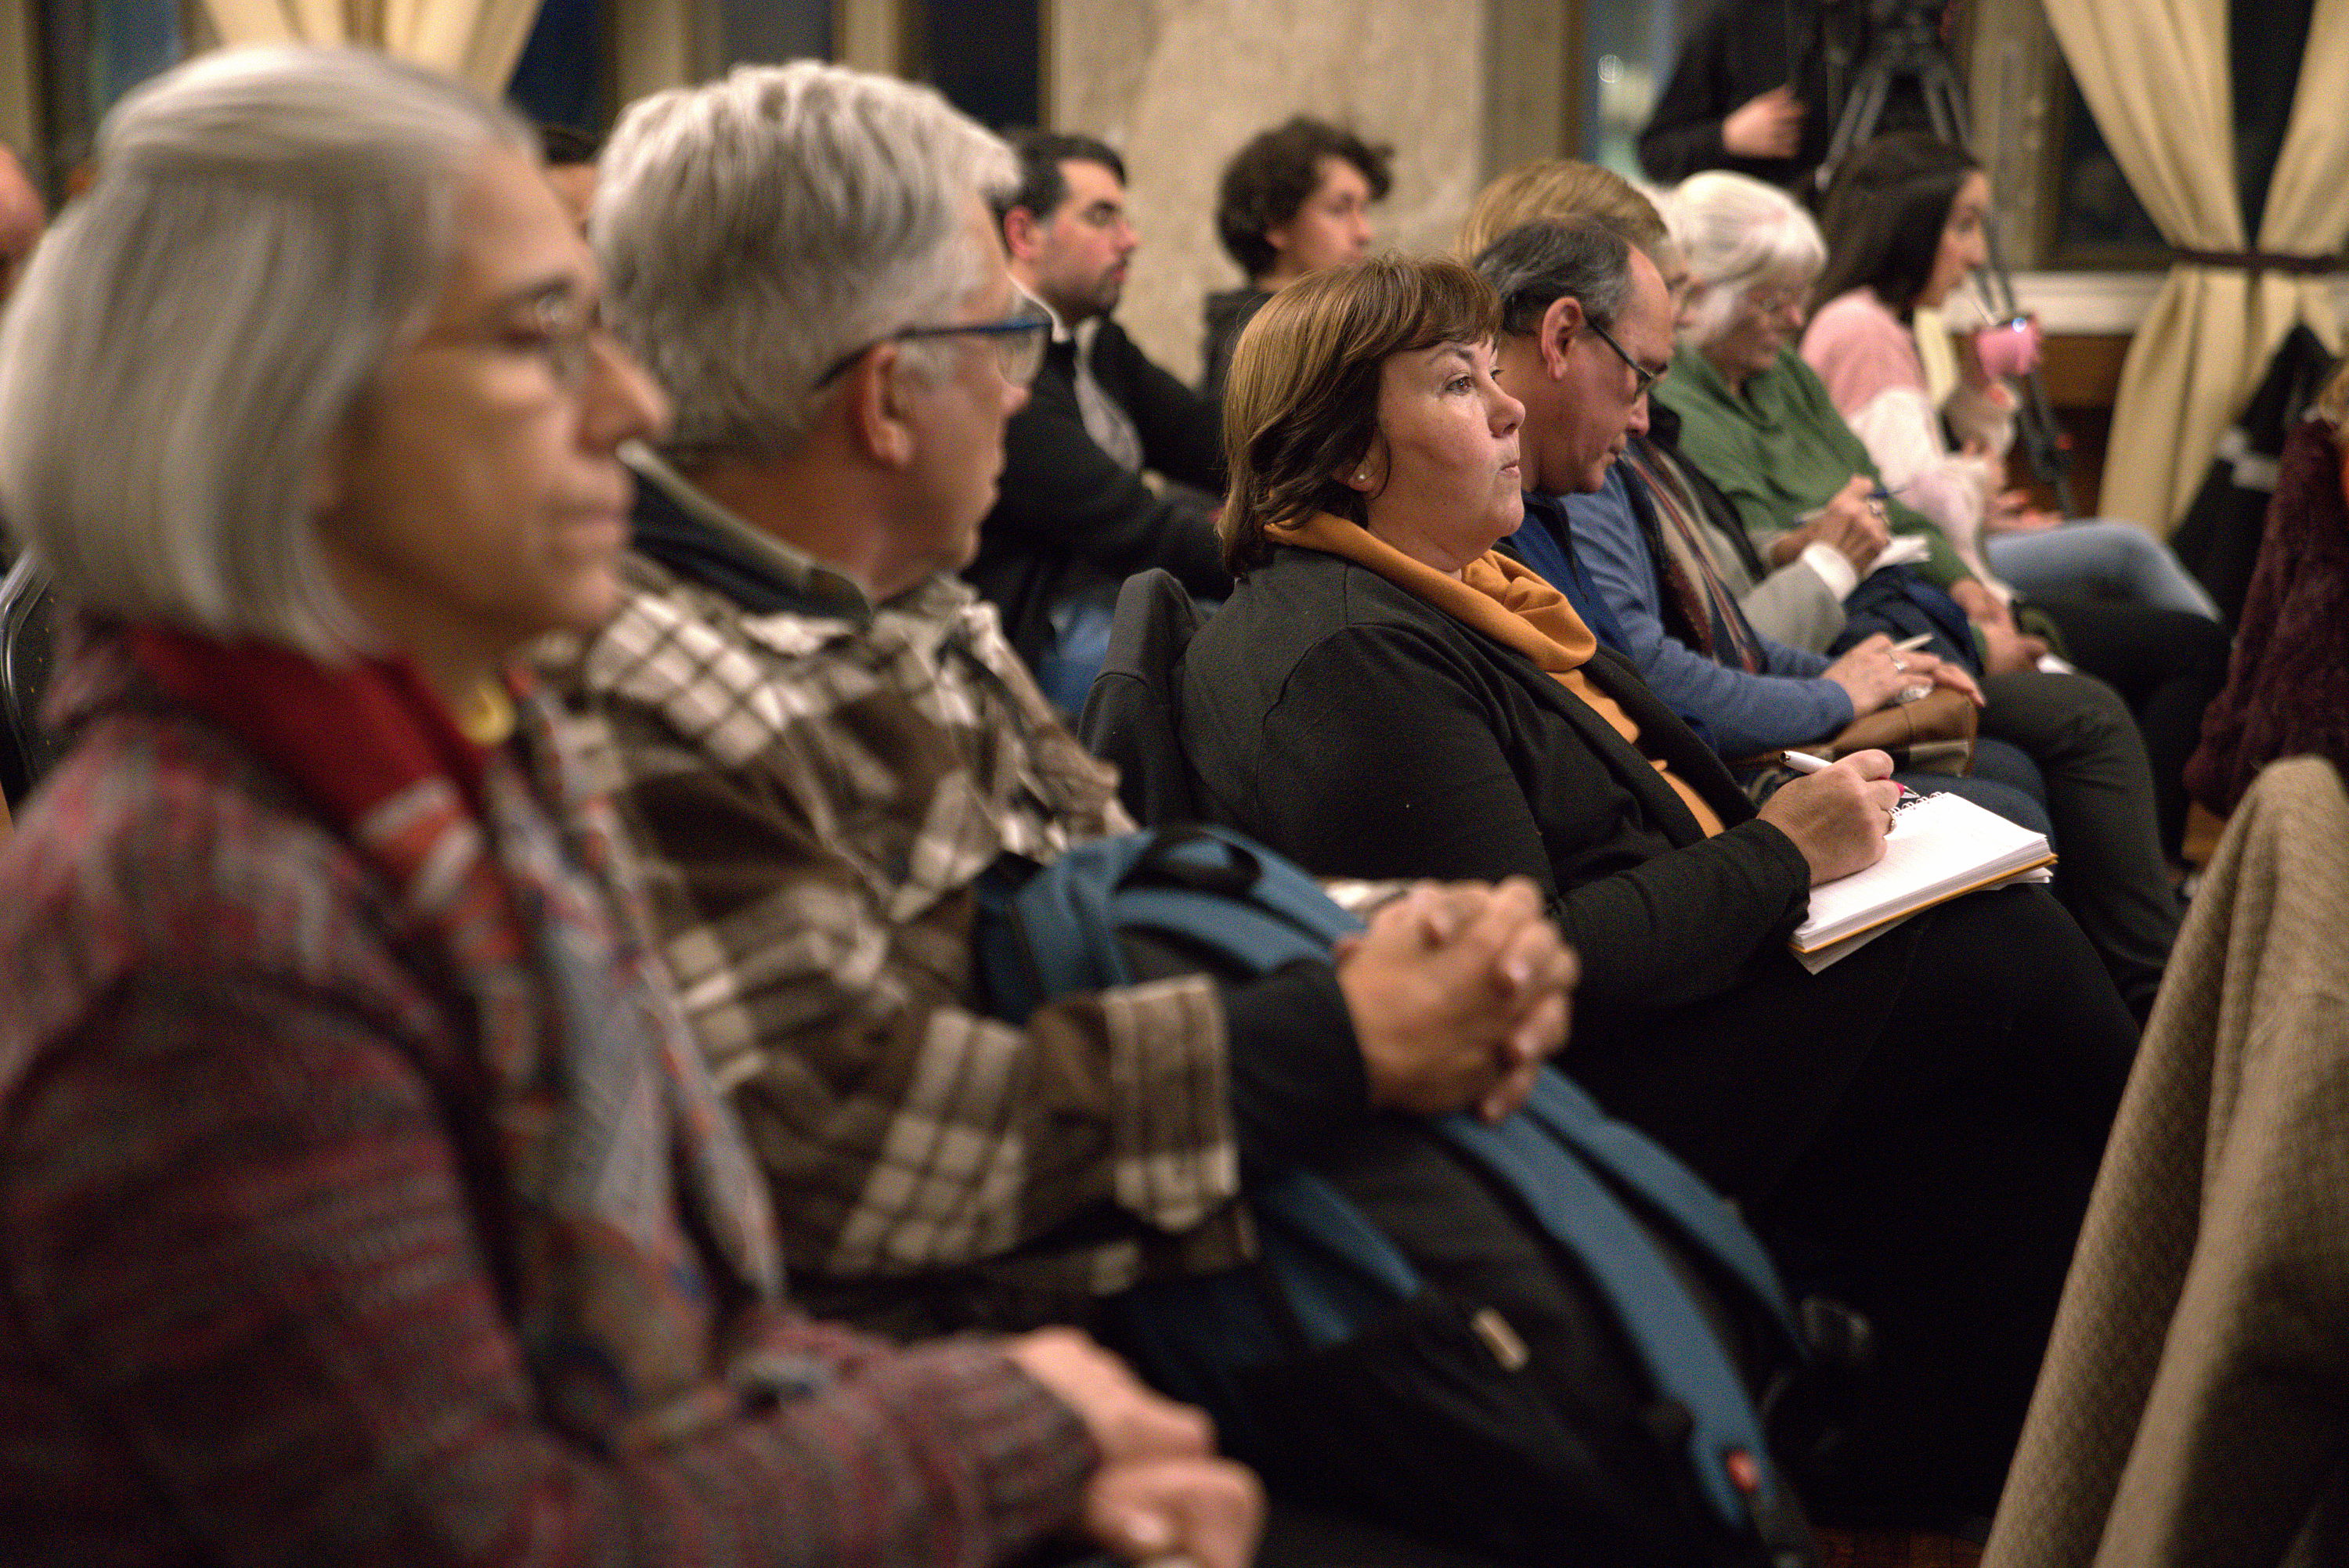 Reunión con los concejales vecinales por los 300 años de Montevideo